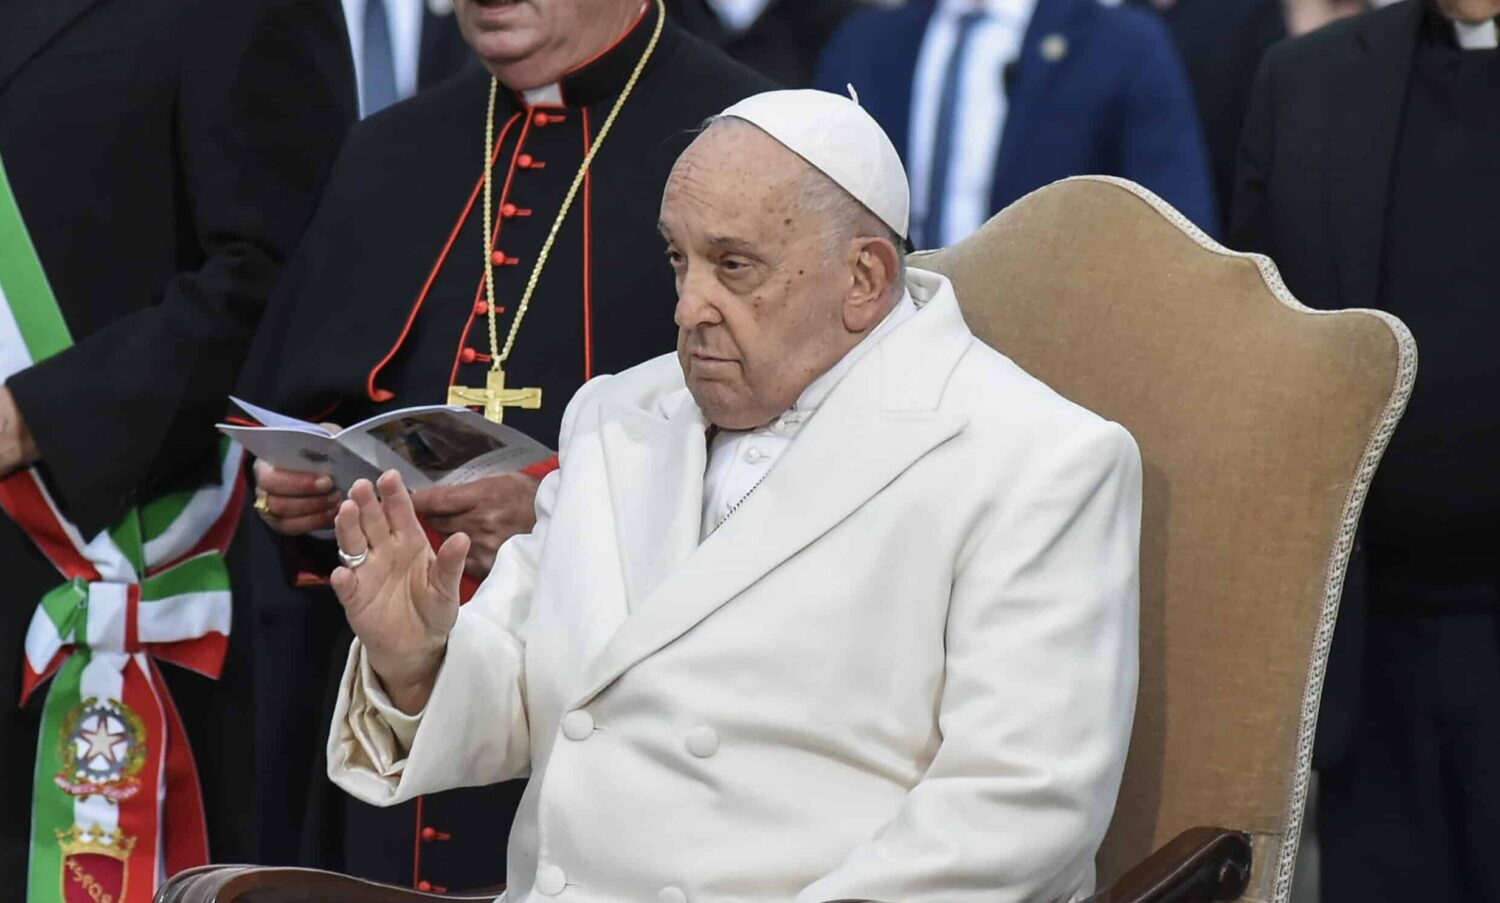 Papa Francesco attacca i mercanti di armi: “Terribile, guadagnare con la morte”